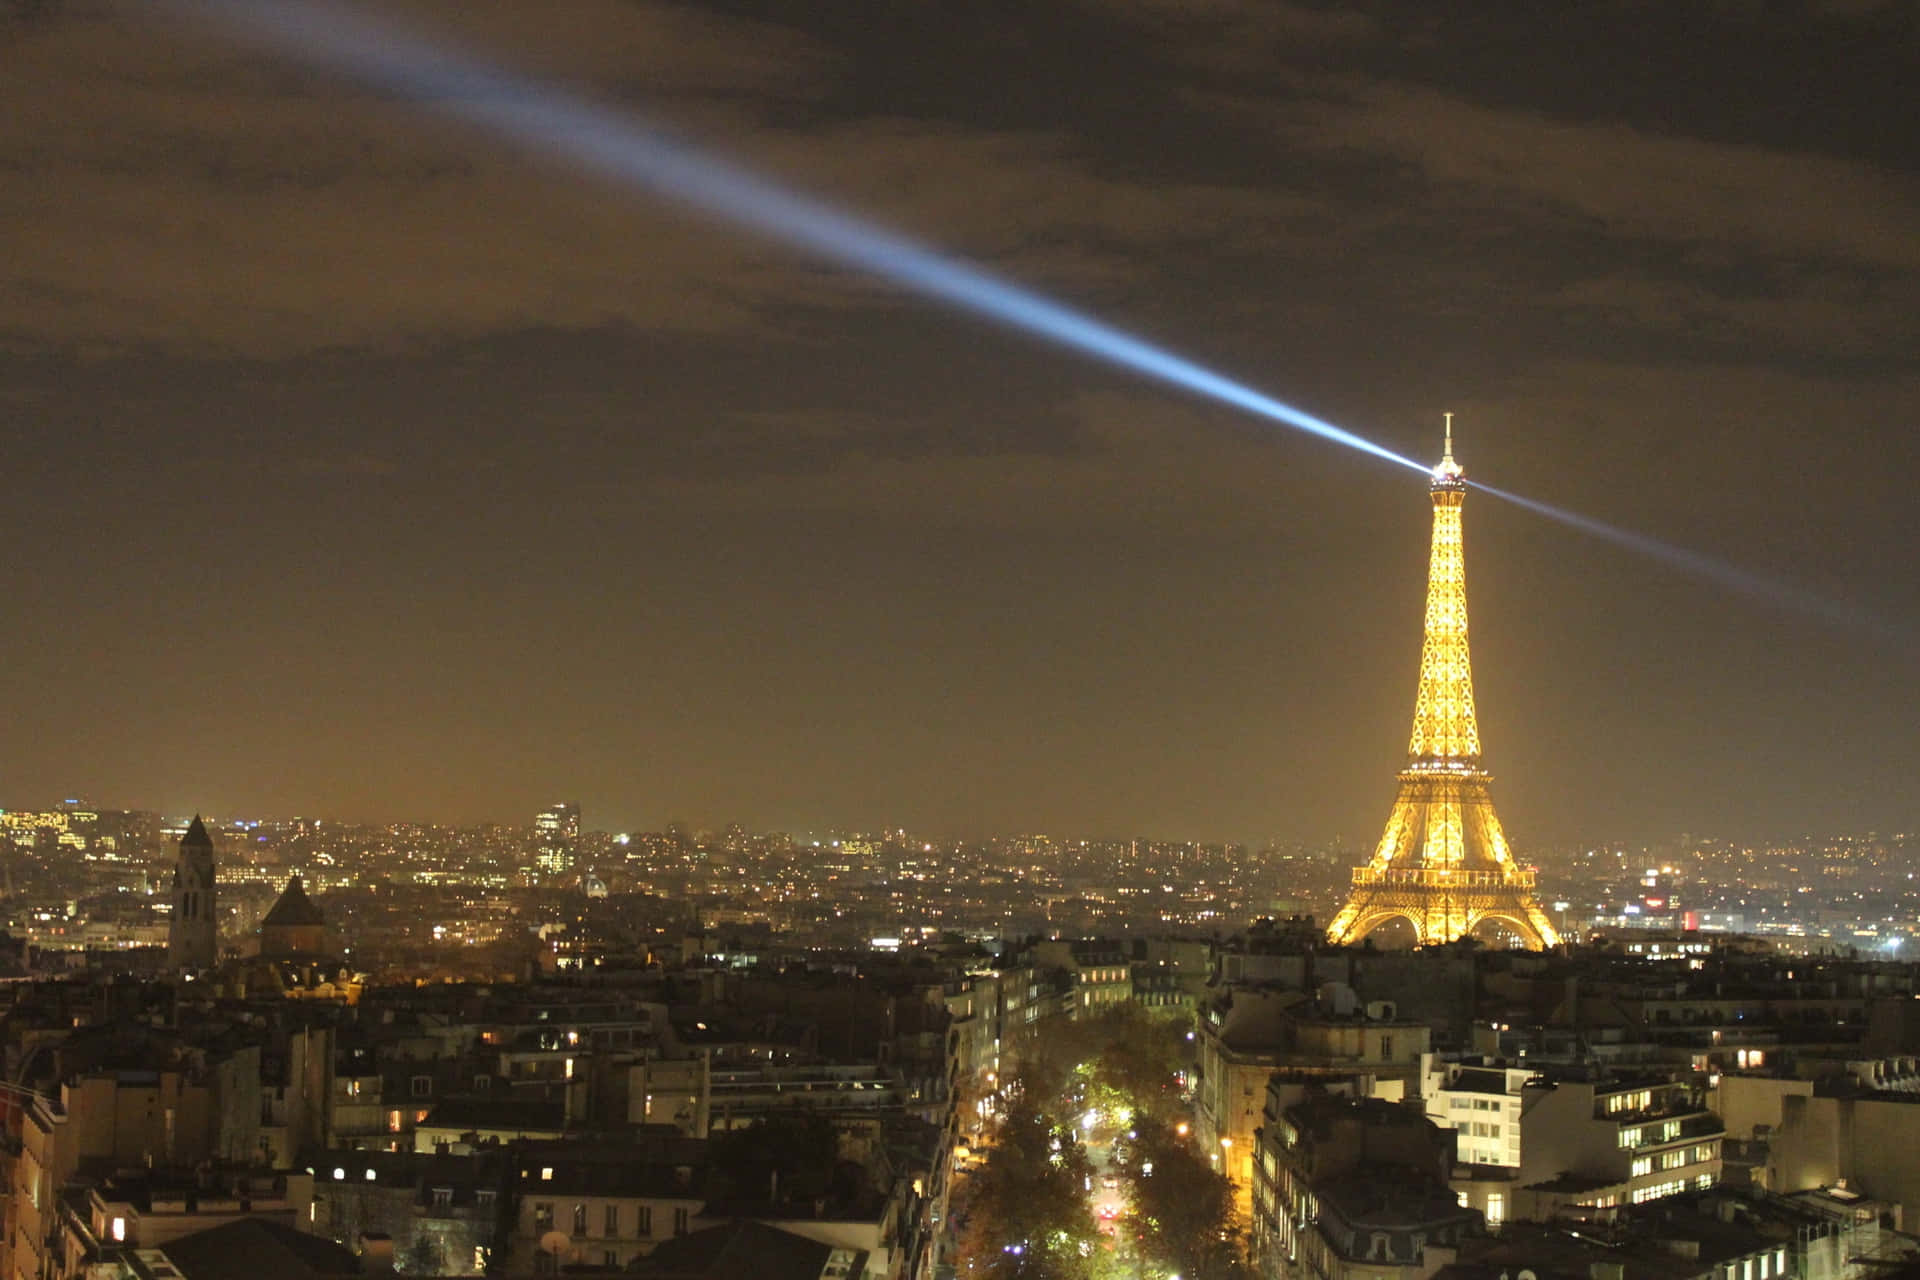 Bildav Eiffeltornet Med Belysning På Natten.